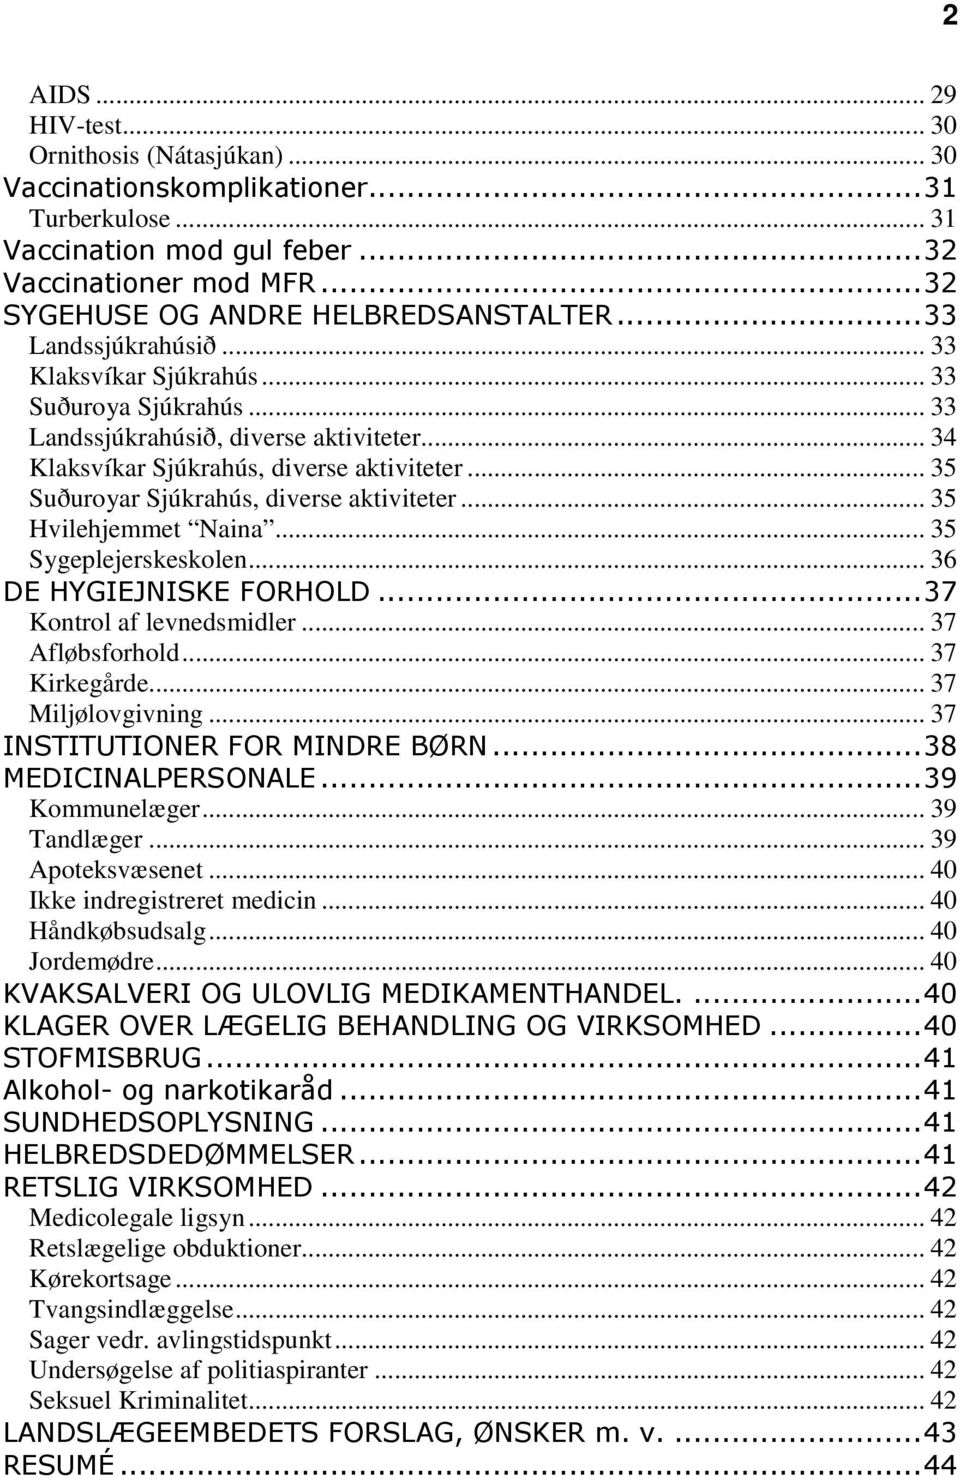 .. 35 Suðuroyar Sjúkrahús, diverse aktiviteter... 35 Hvilehjemmet Naina... 35 Sygeplejerskeskolen... 36 DE HYGIEJNISKE FORHOLD...37 Kontrol af levnedsmidler... 37 Afløbsforhold... 37 Kirkegårde.